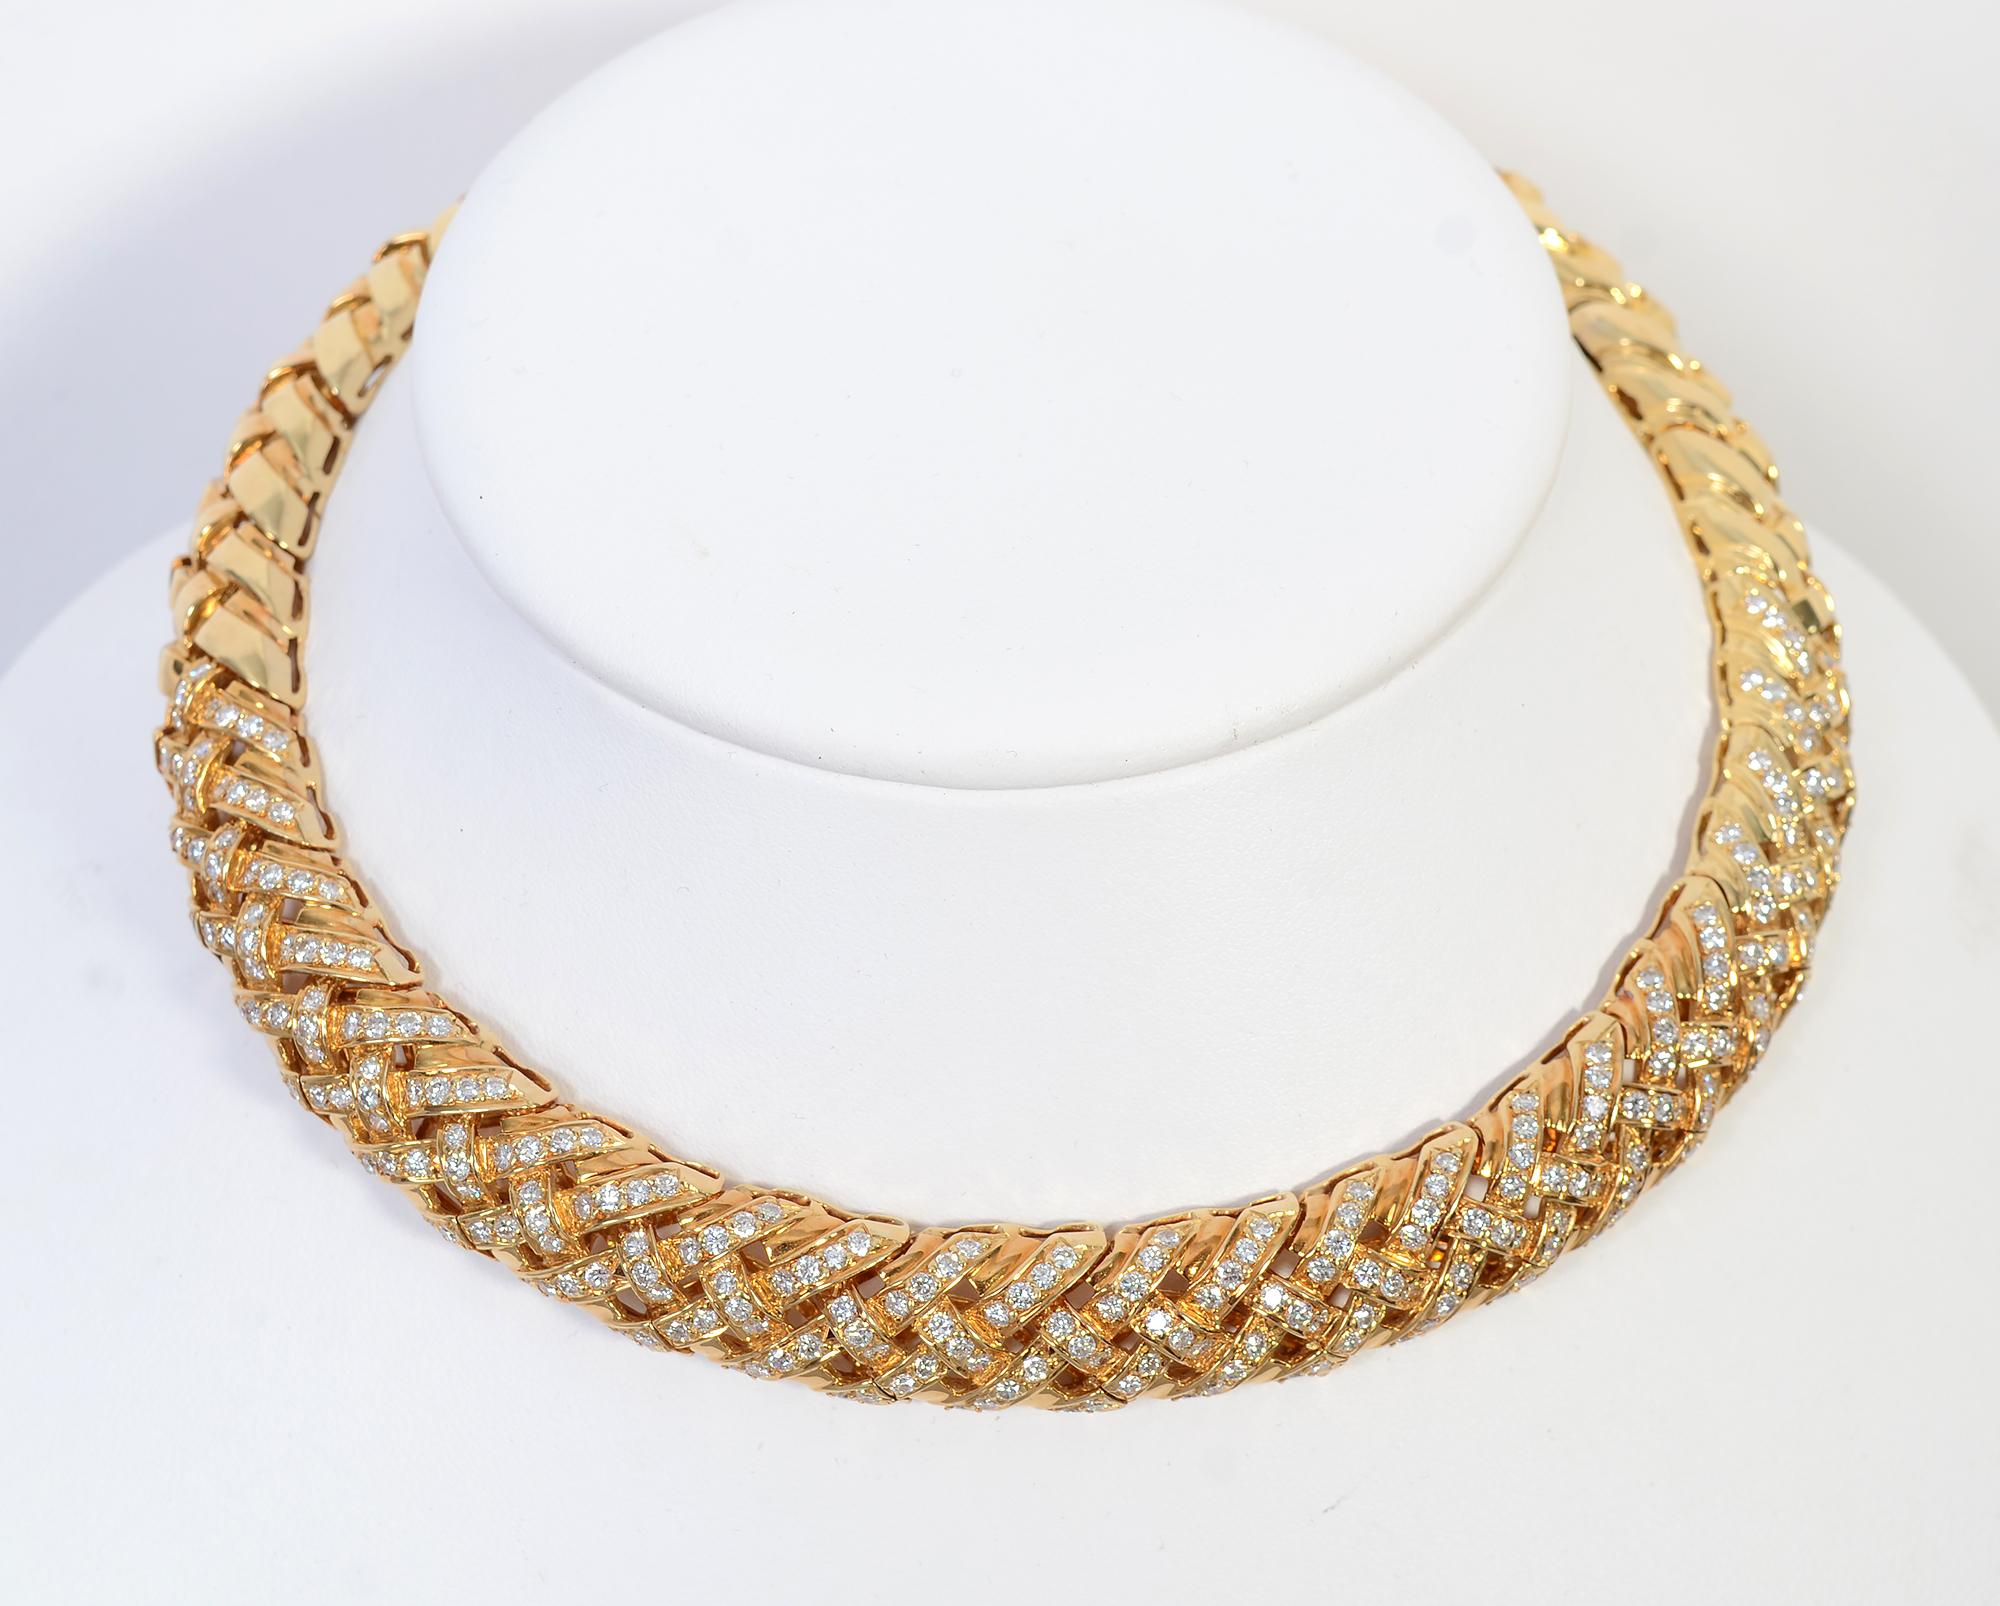 Diese elegante Halskette wurde von dem New Yorker Juwelier Jerry Blickman nach Maß angefertigt. Das Unternehmen besteht seit 1946 und ist für die außergewöhnliche Qualität seiner Designs und Edelsteine bekannt.
Dieses 18-karätige Halsband im